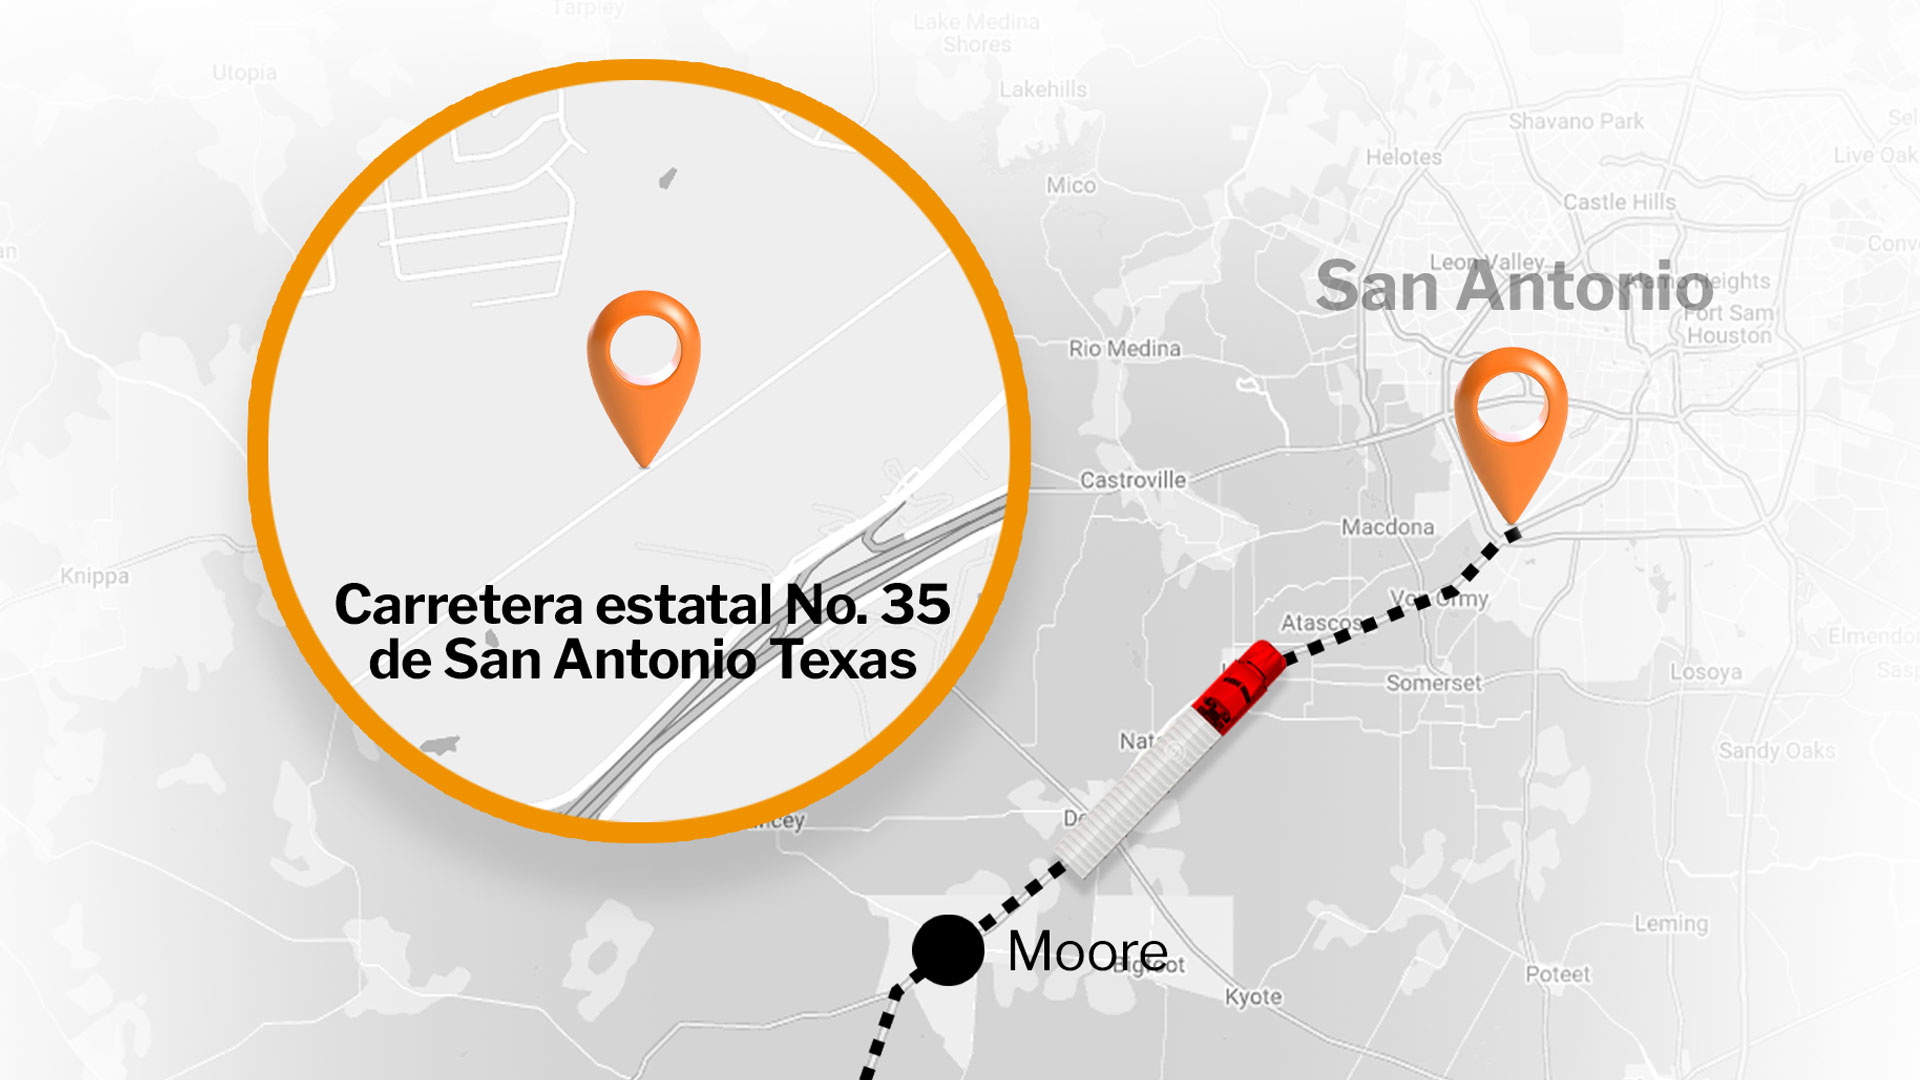 El camión fue estacionado a 235km de la frontera con México y a 25km de San Antonio. (Ilustración: Infobae)